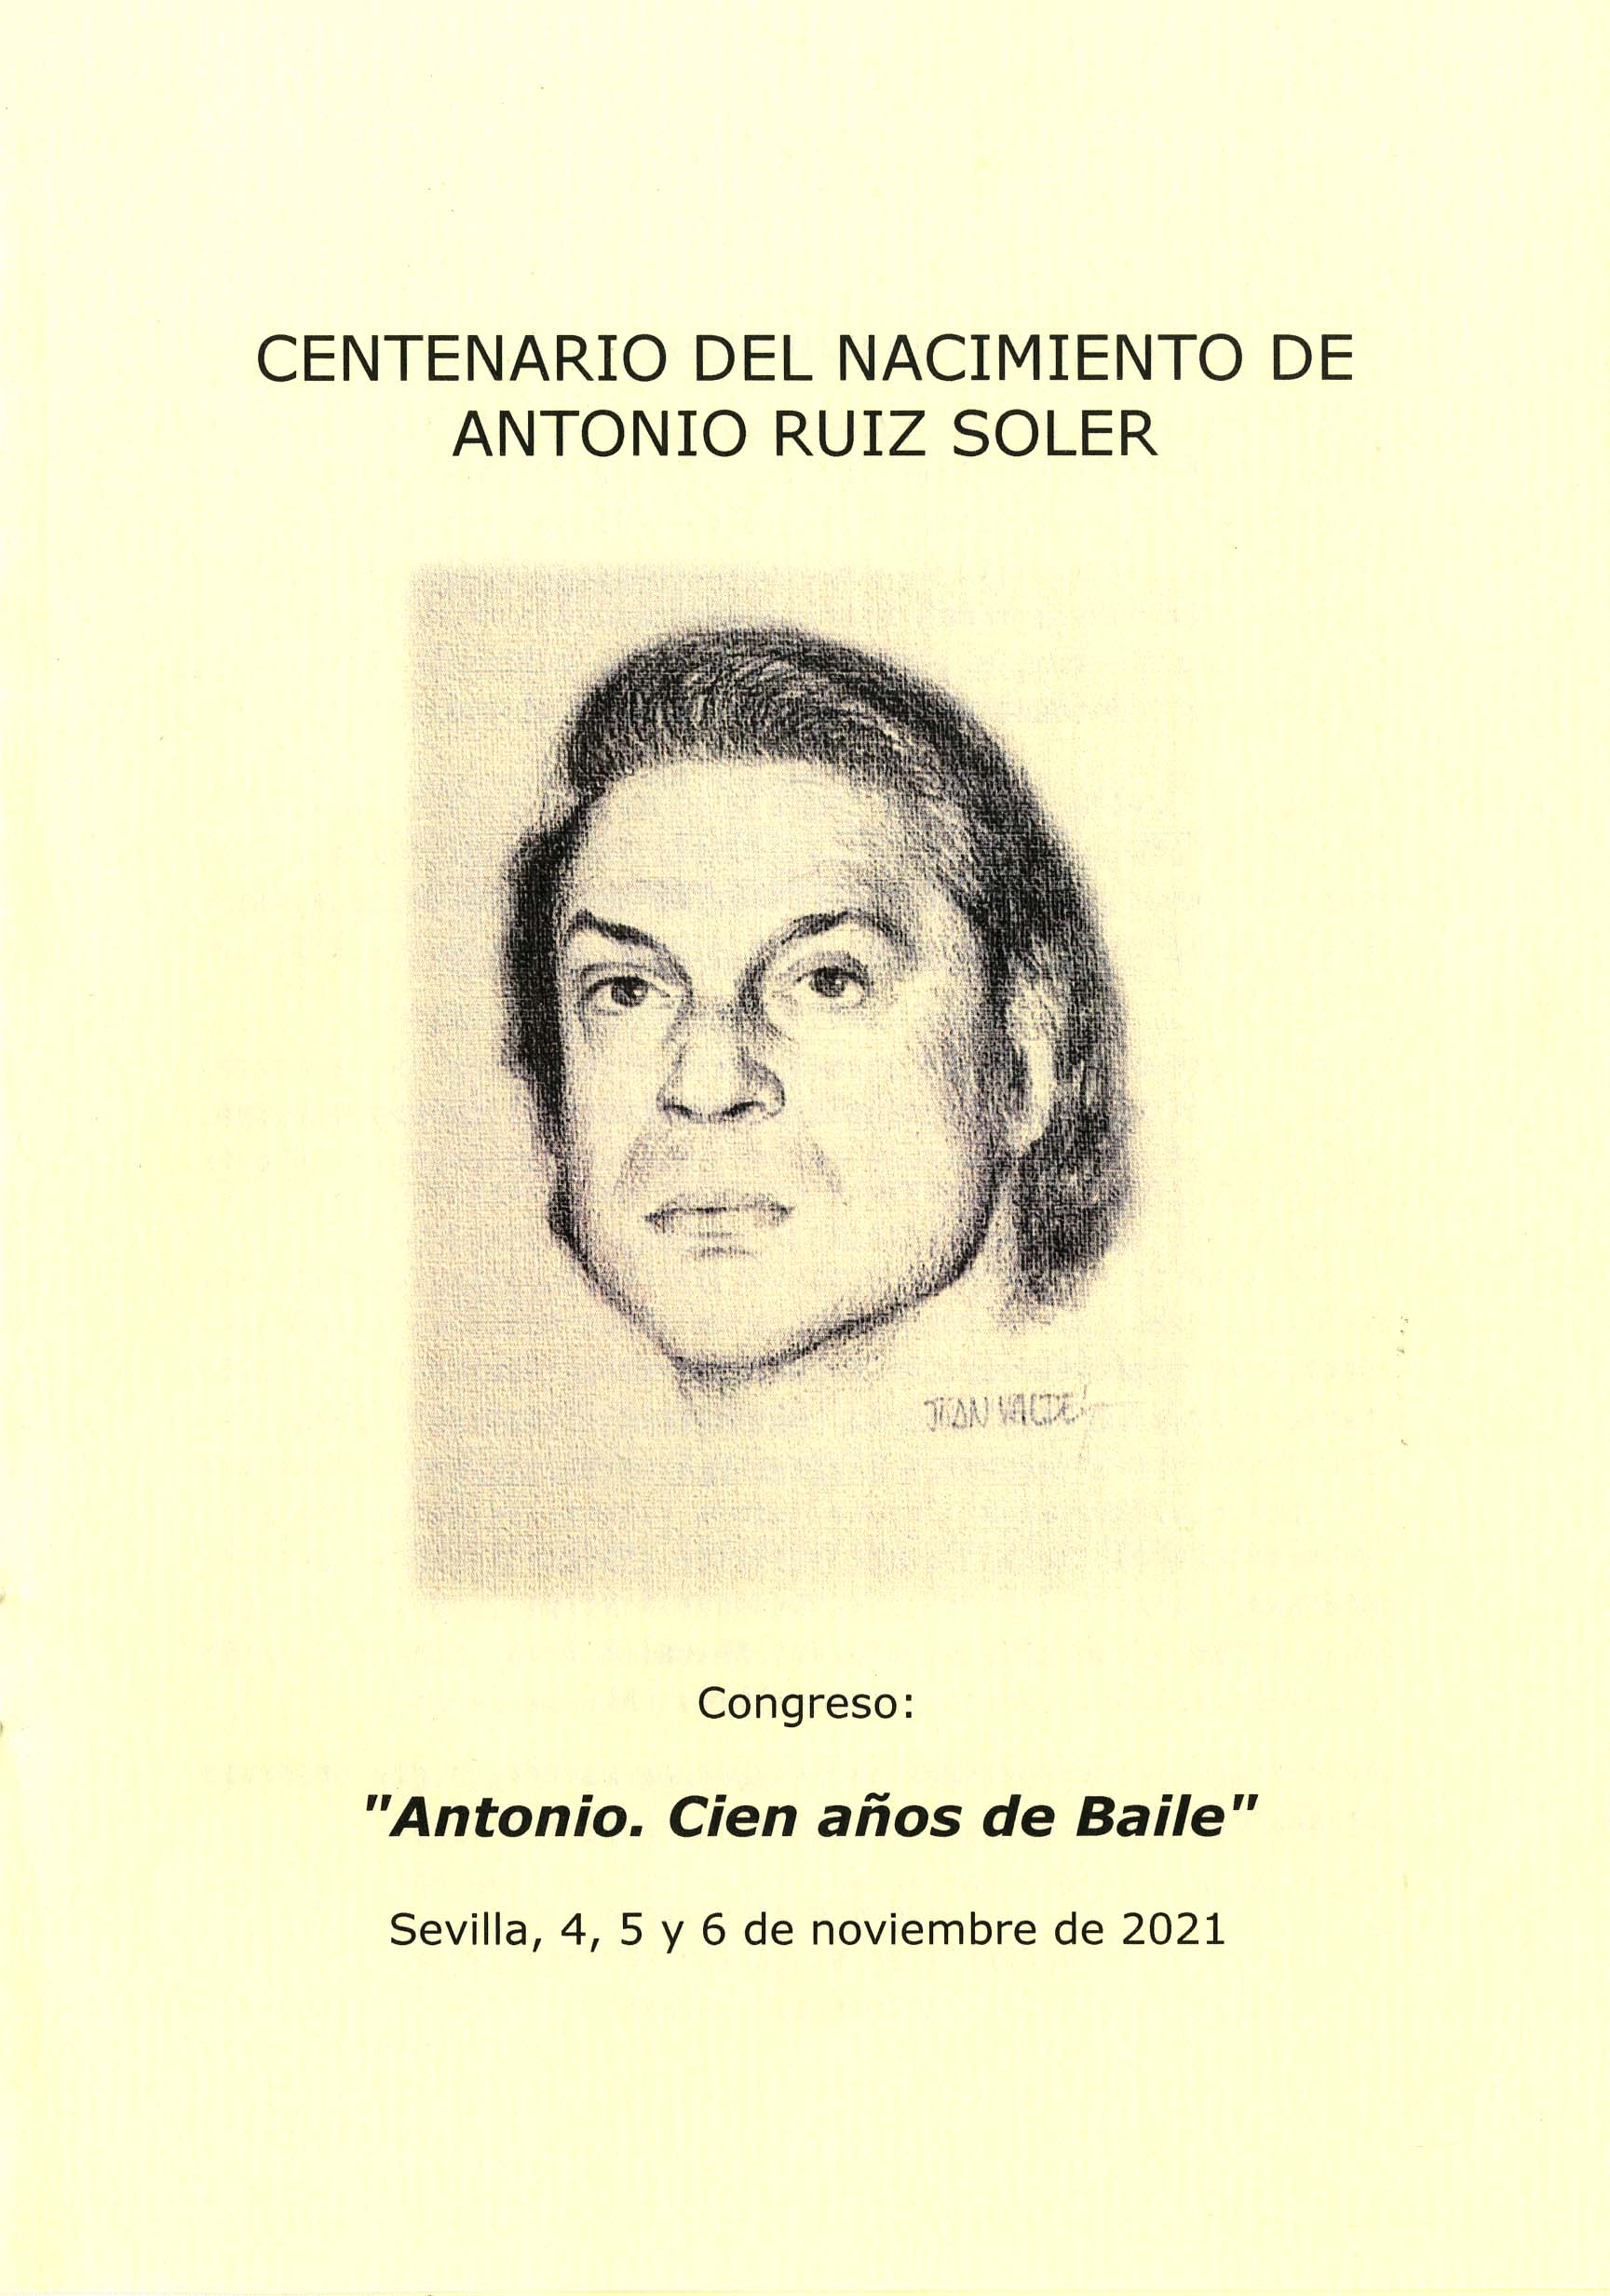 Congreso "Antonio. Cien años de baile"